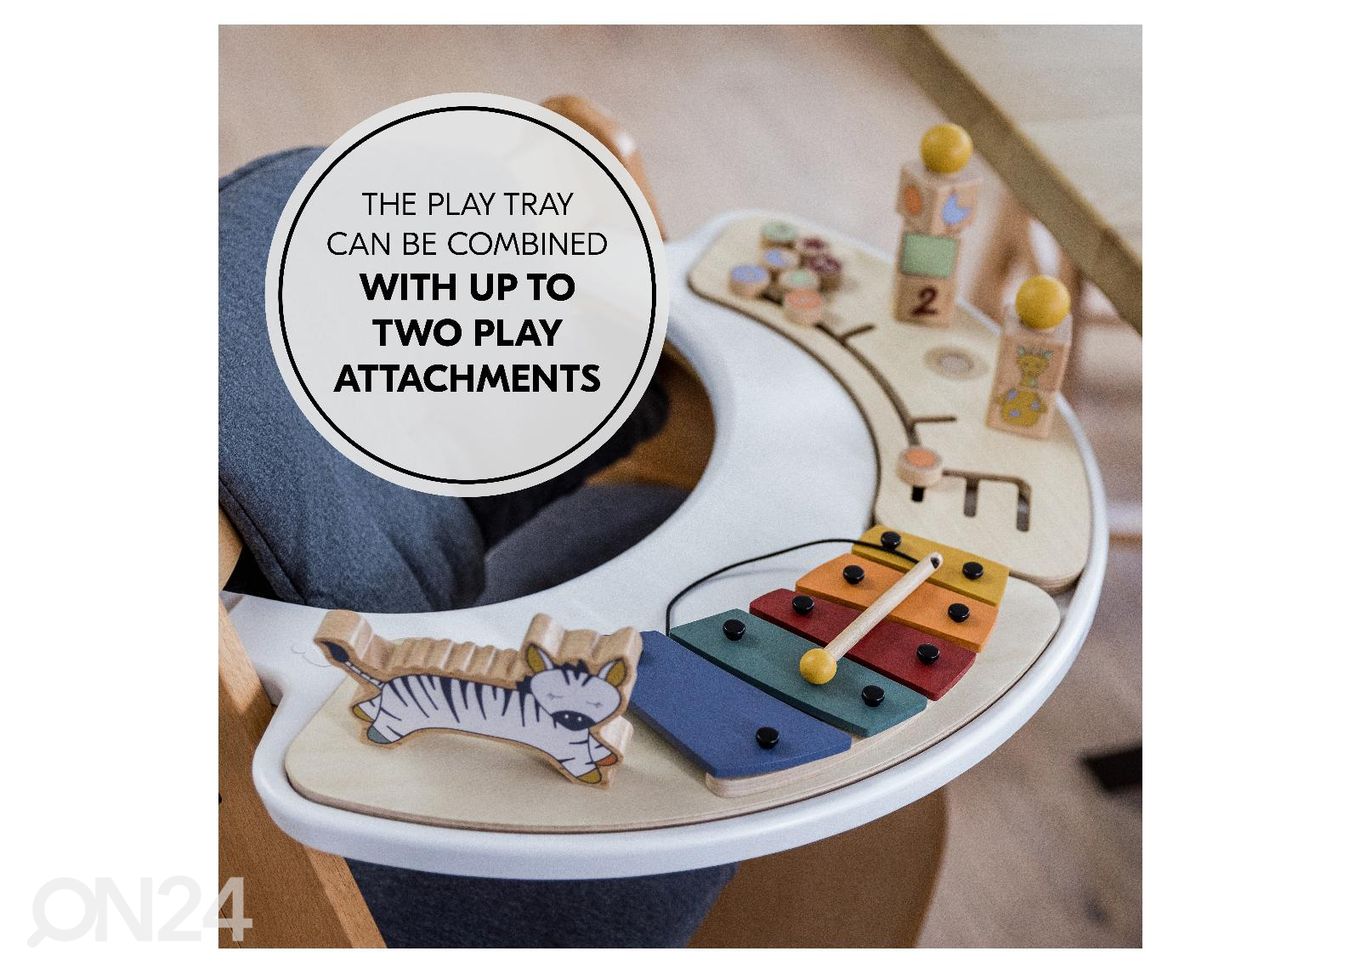 Hauck söötmistooli Play Tray kandik koos mänguasjaga Sorteerimismäng Kaelkirjak suurendatud